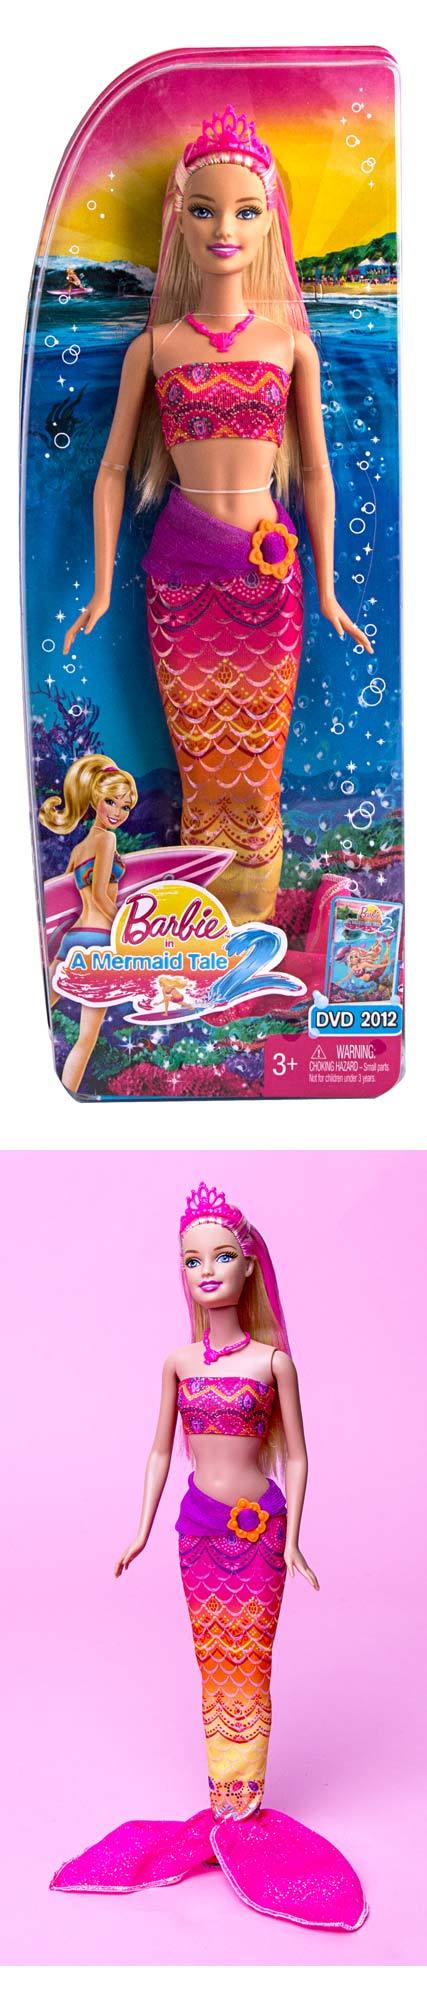 海底パイプライン Barbie In a Mermaid Tale Merliah Doll - news.mycelebs.ai